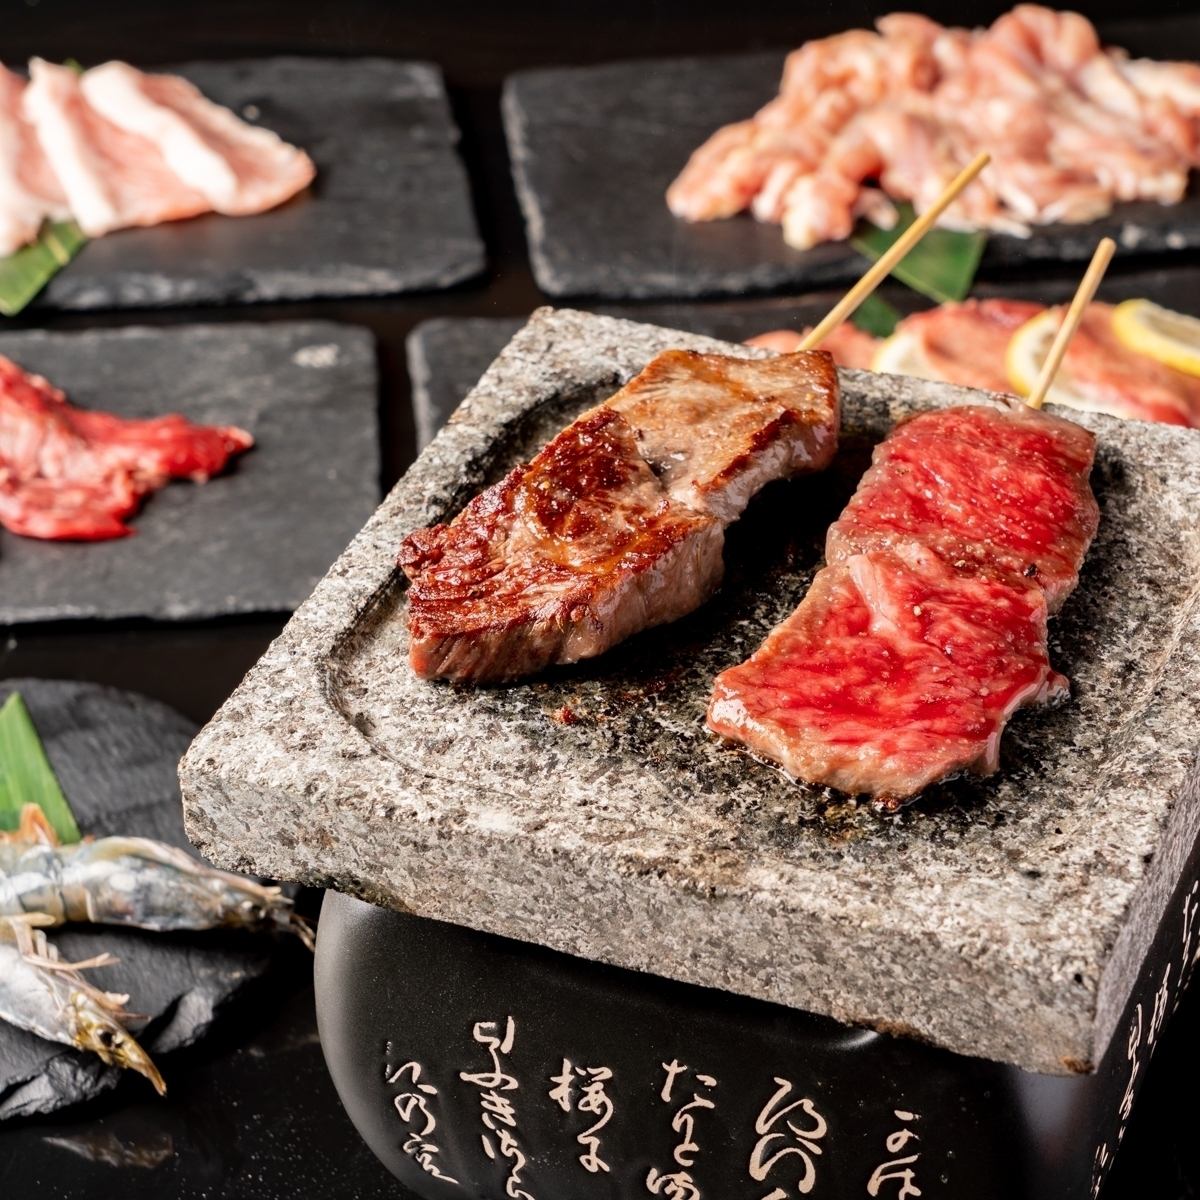 距离千叶站很近!提供熔岩烤肉、肉生鱼片、肉寿司等美味肉食的肉食餐厅。